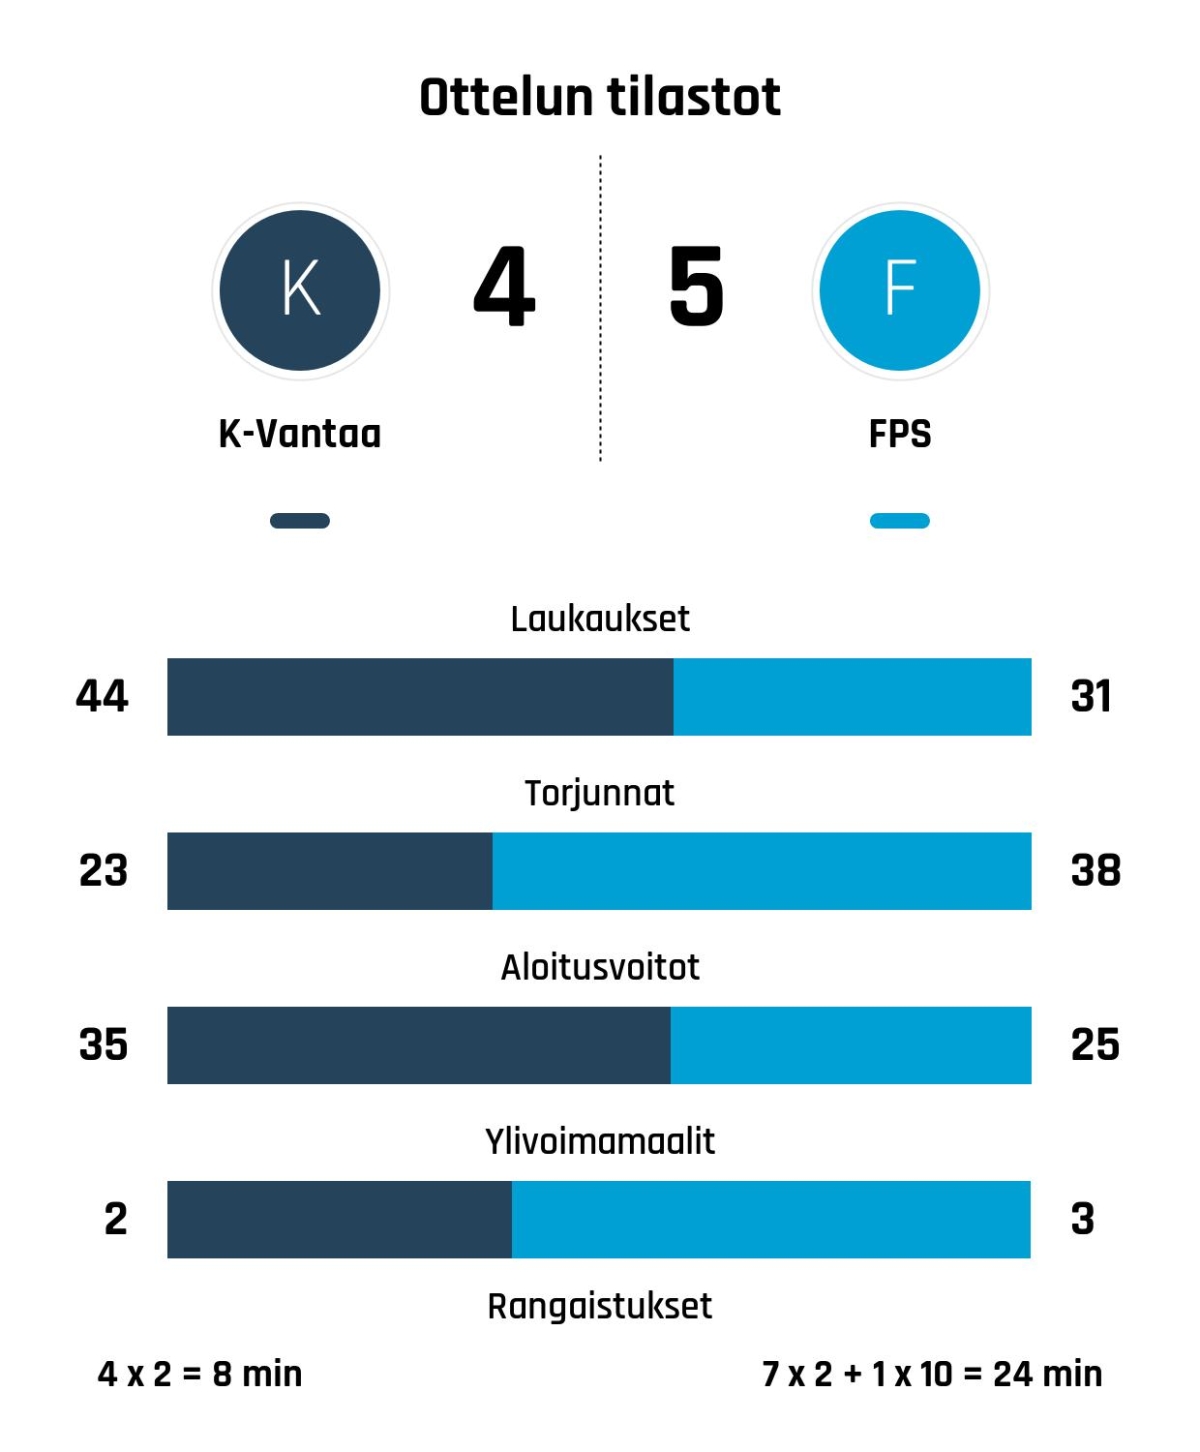 FPS voitti K-Vantaan niukasti 4-5